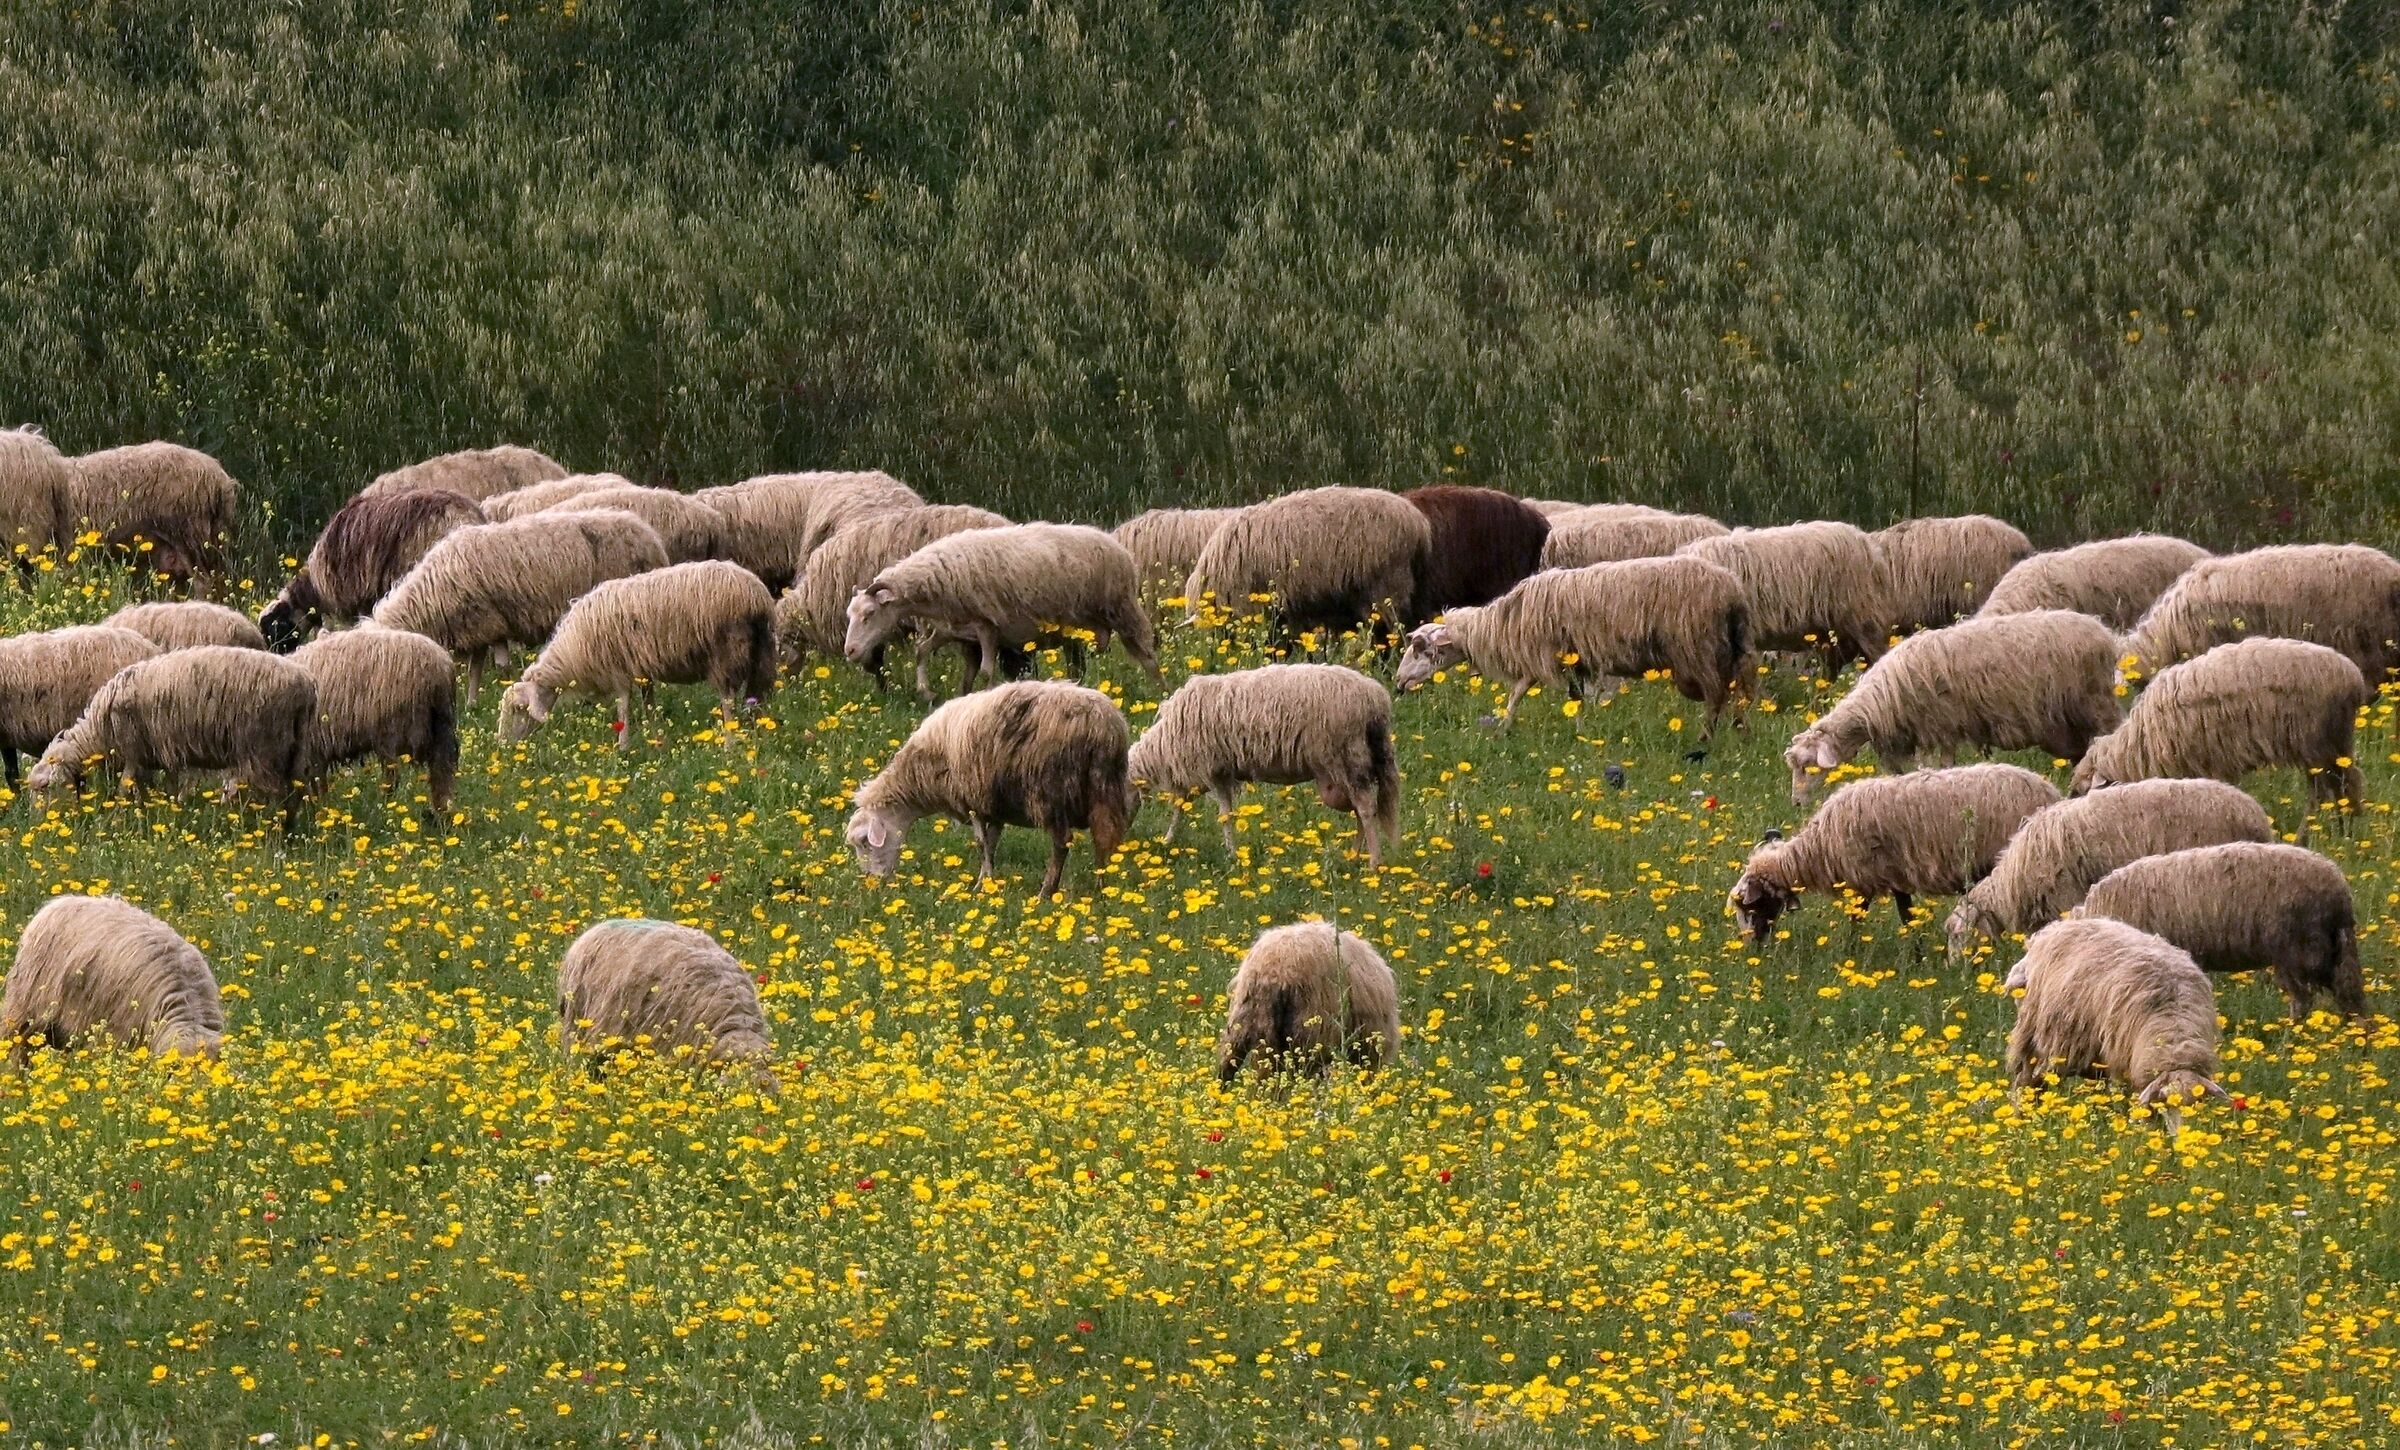 Sheep grazing...